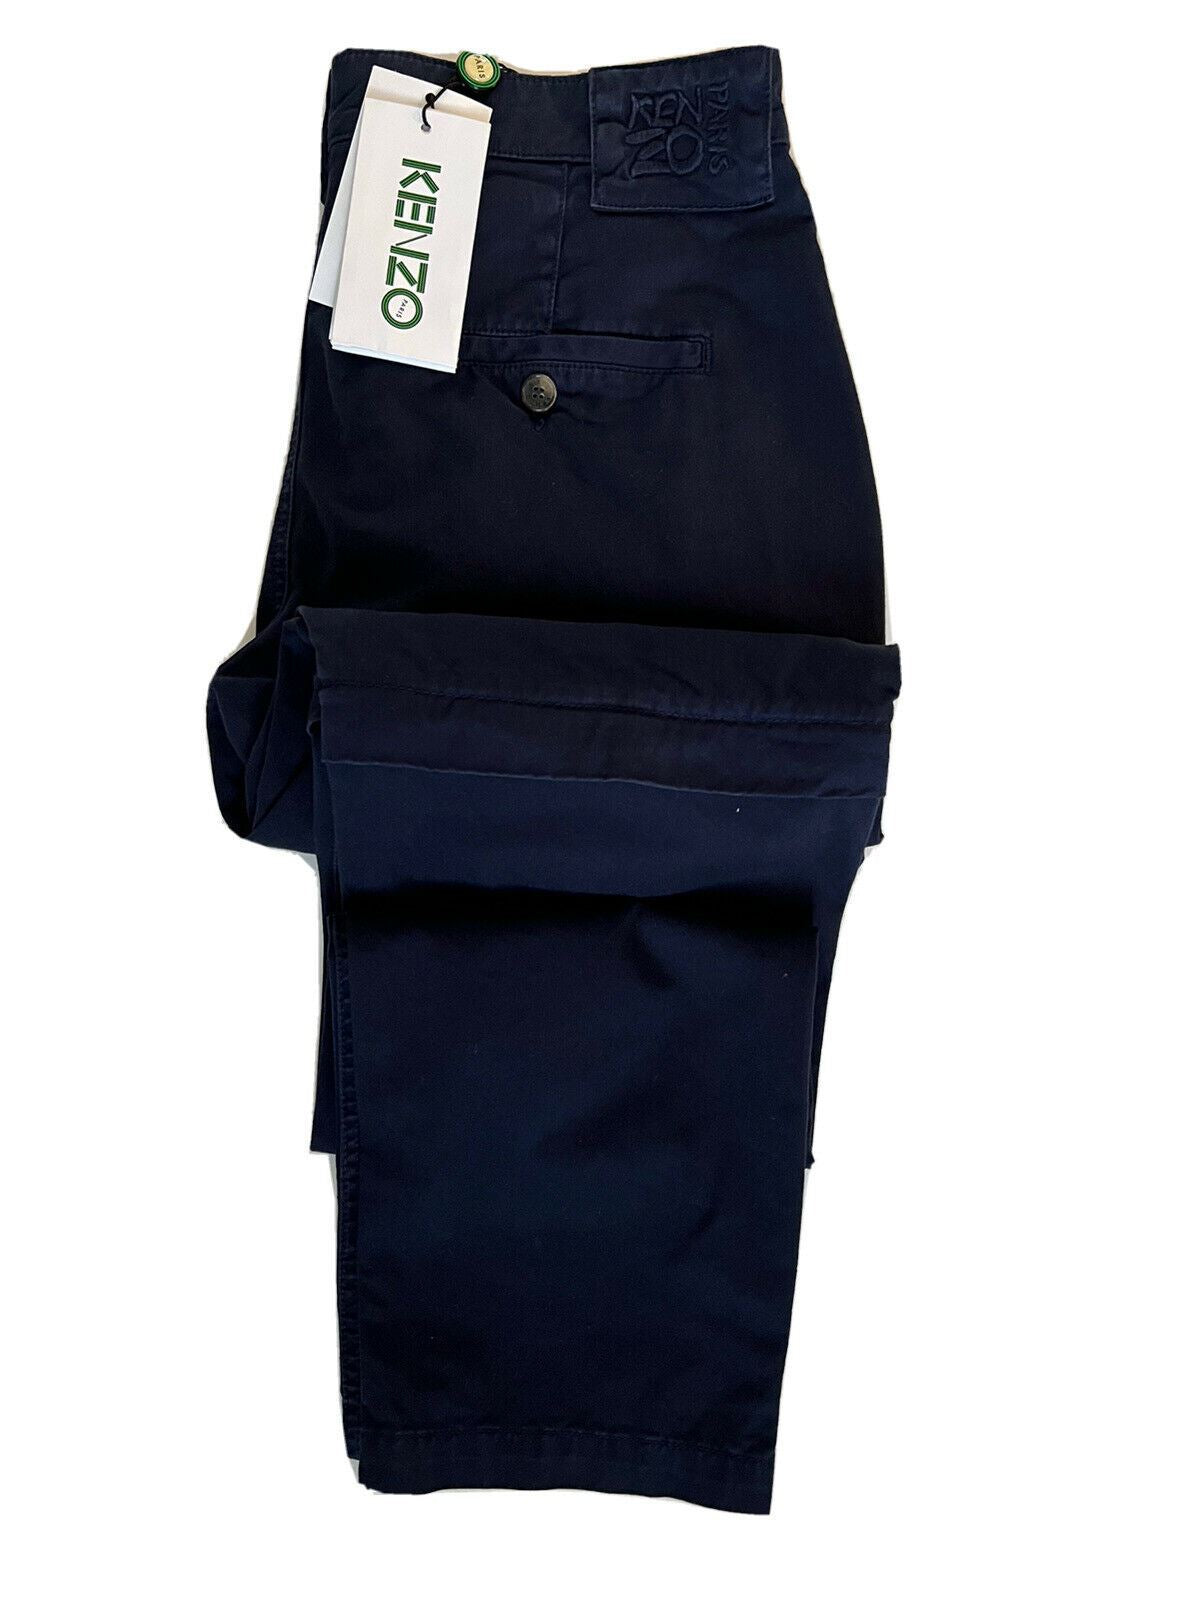 Мужские повседневные брюки Kenzo Midnight Blue на молнии за 280 долларов США, размер 28, США (44 евро)